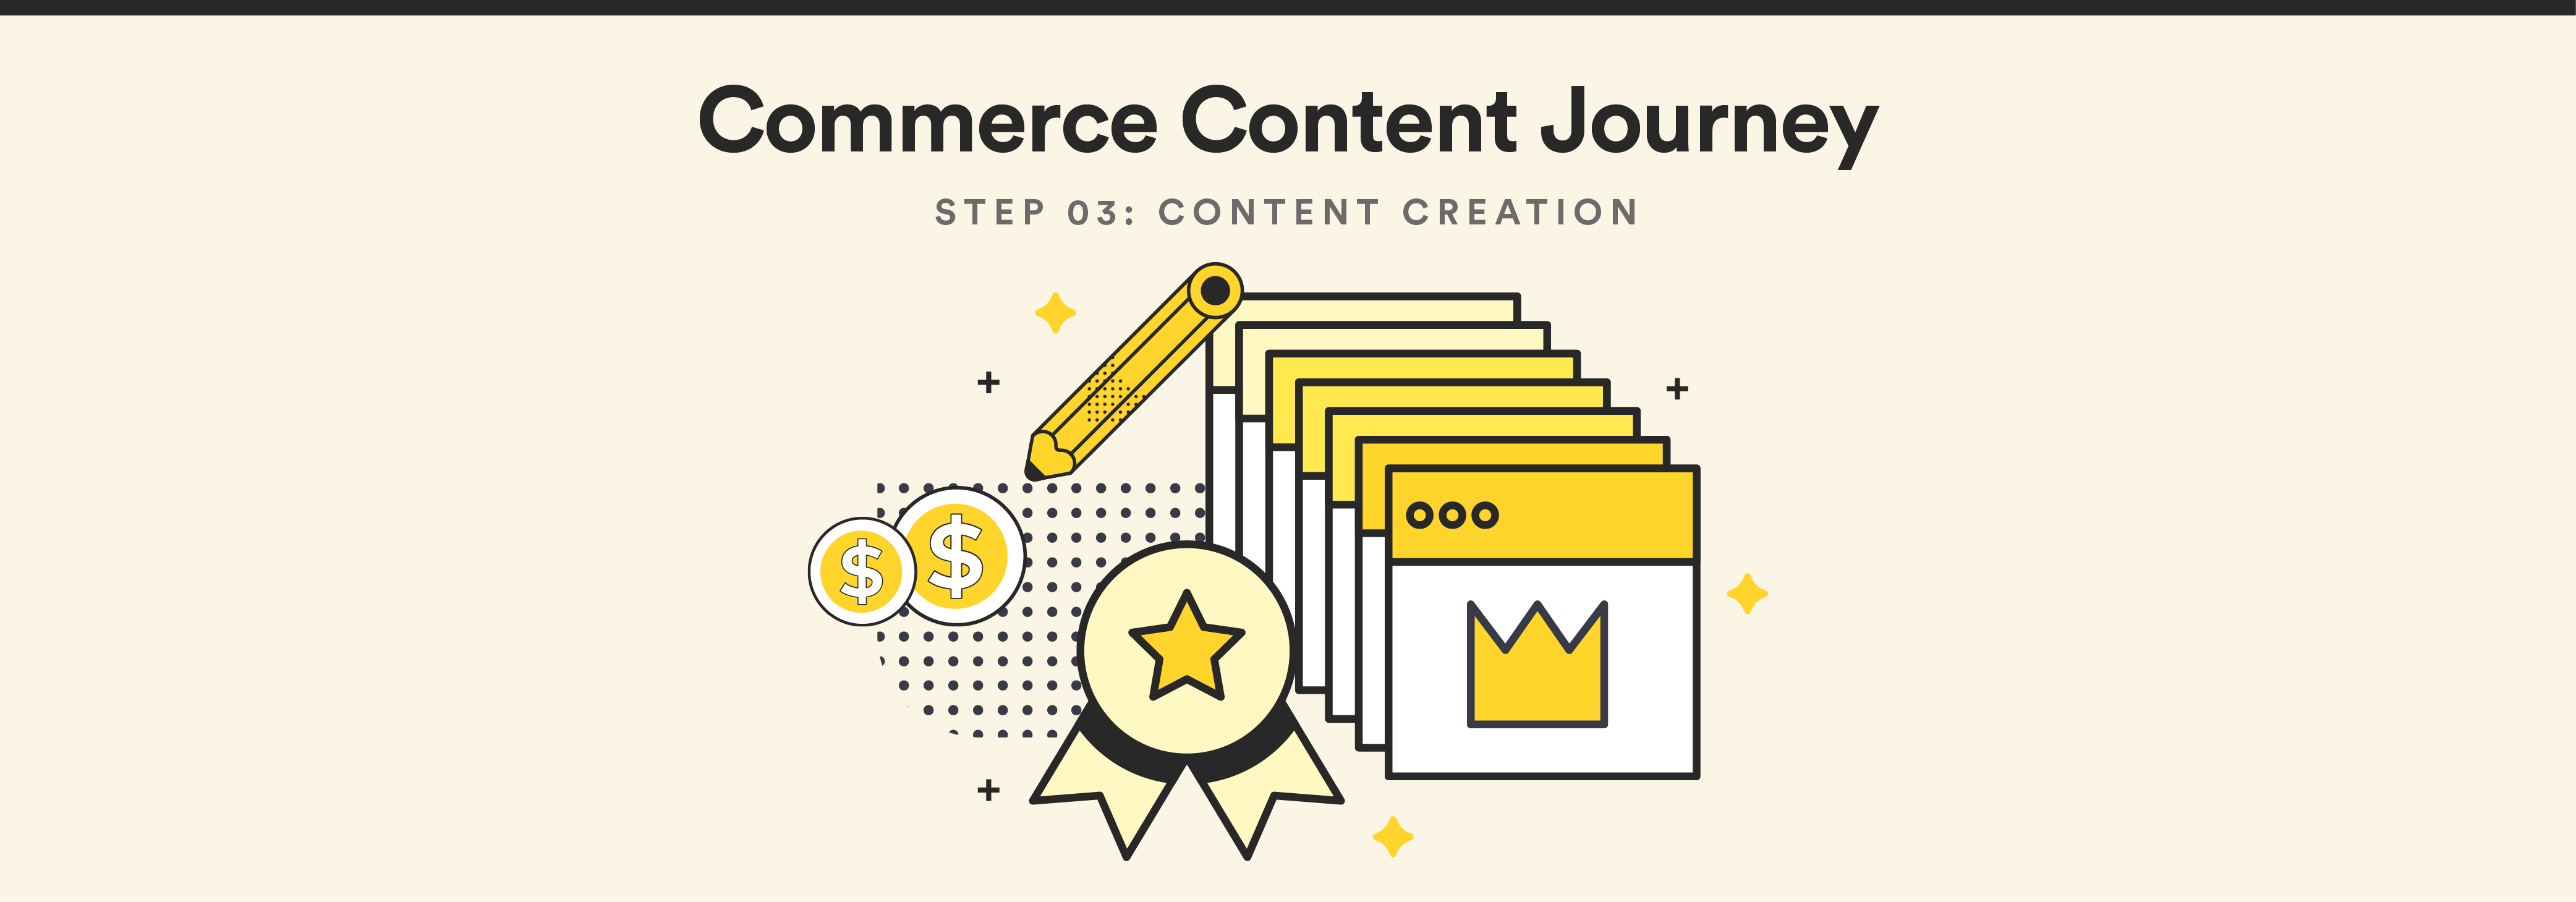 Commerce Content Journey: Content Creation